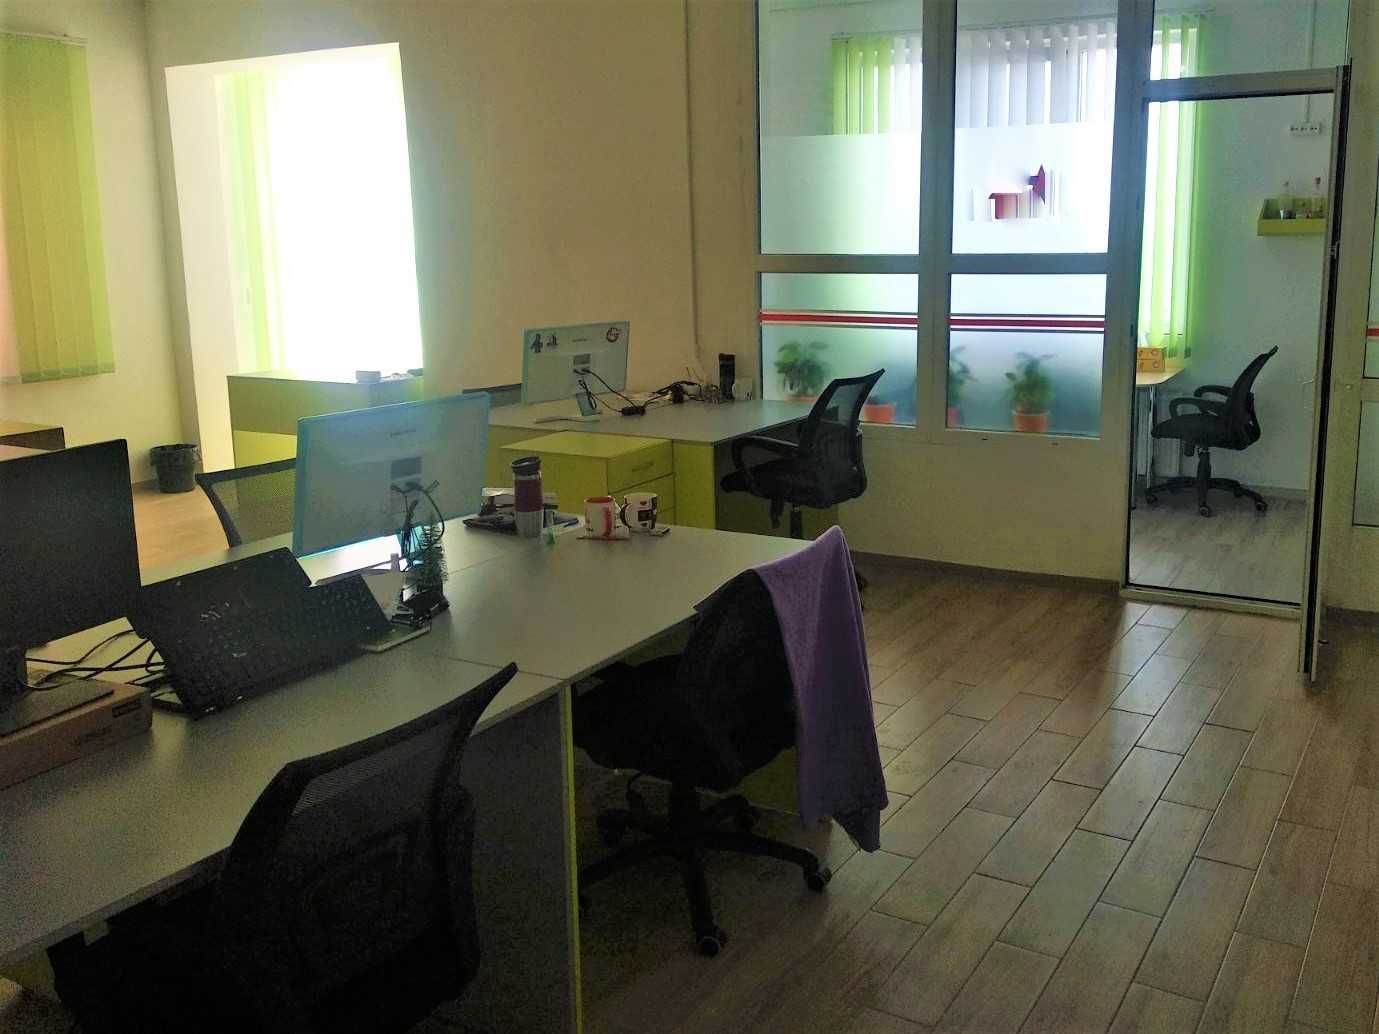 140  кв.м панорамный офис  IT open space+ кабинеты. кухня